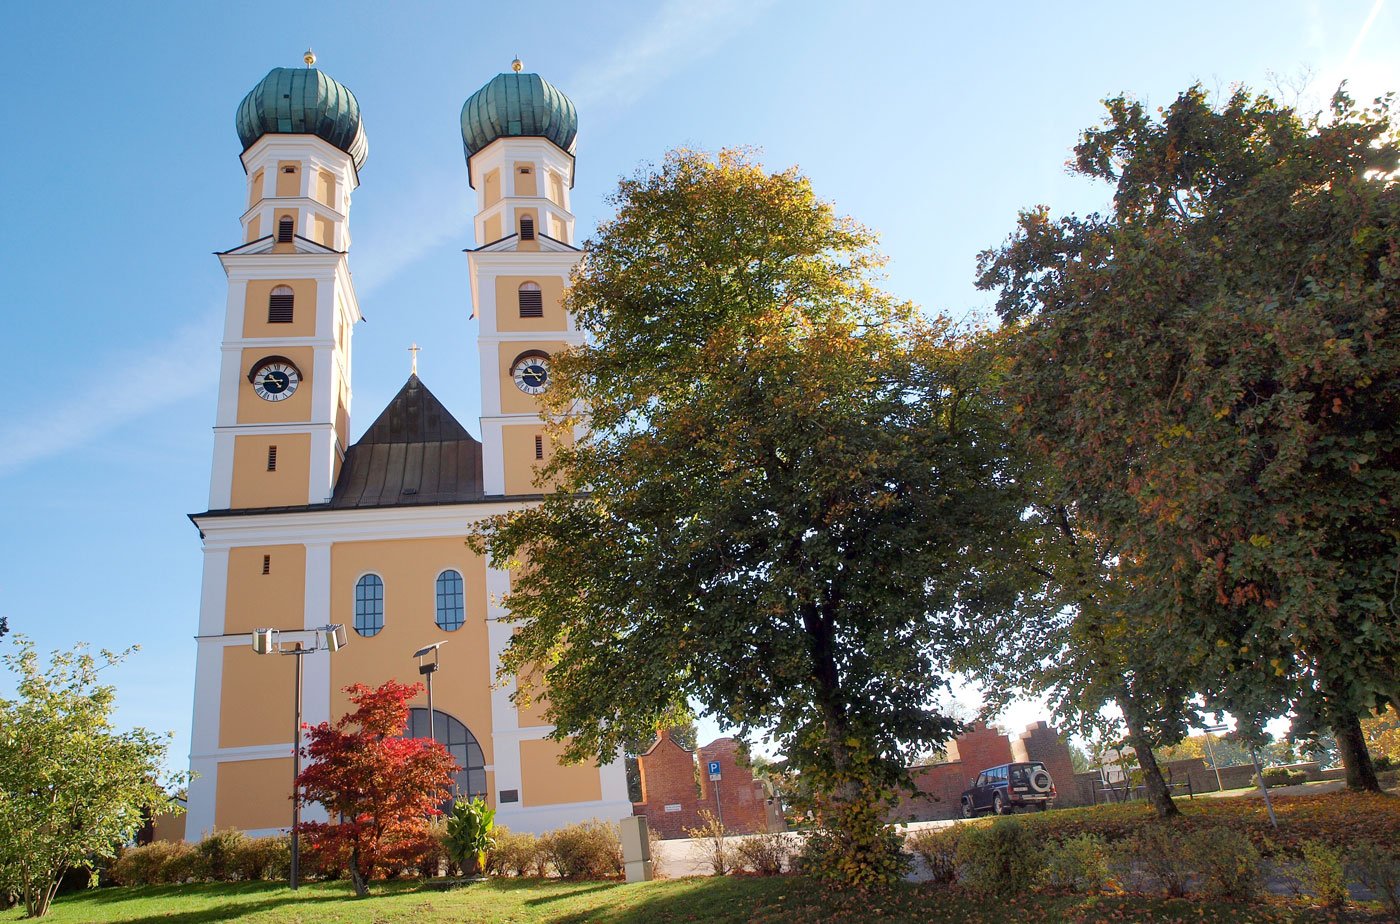 Der doppeltürmige Barockbau der Wallfahrtskirche Gartlberg